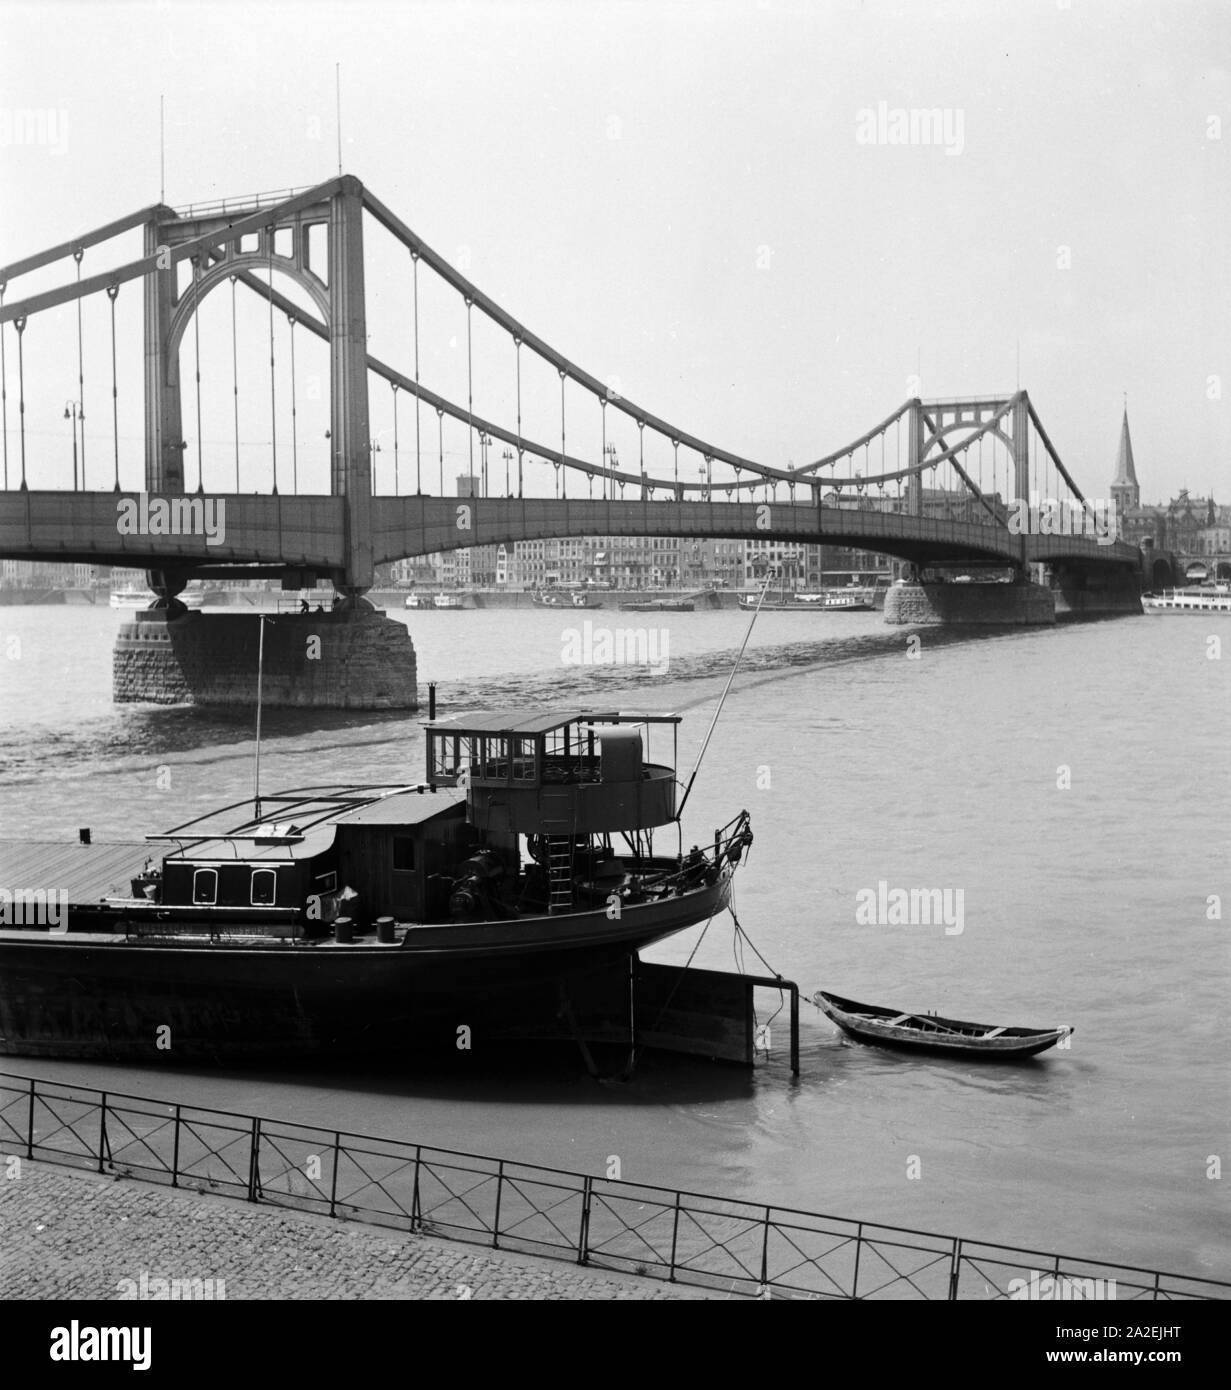 Die Deutzer Hängebrücke oder auch Hindenburgbrücke über den Rhein in Köln verbindet die Rechte und die linke Rheinseite der Stadt, 1930er Jahre Foto Stock